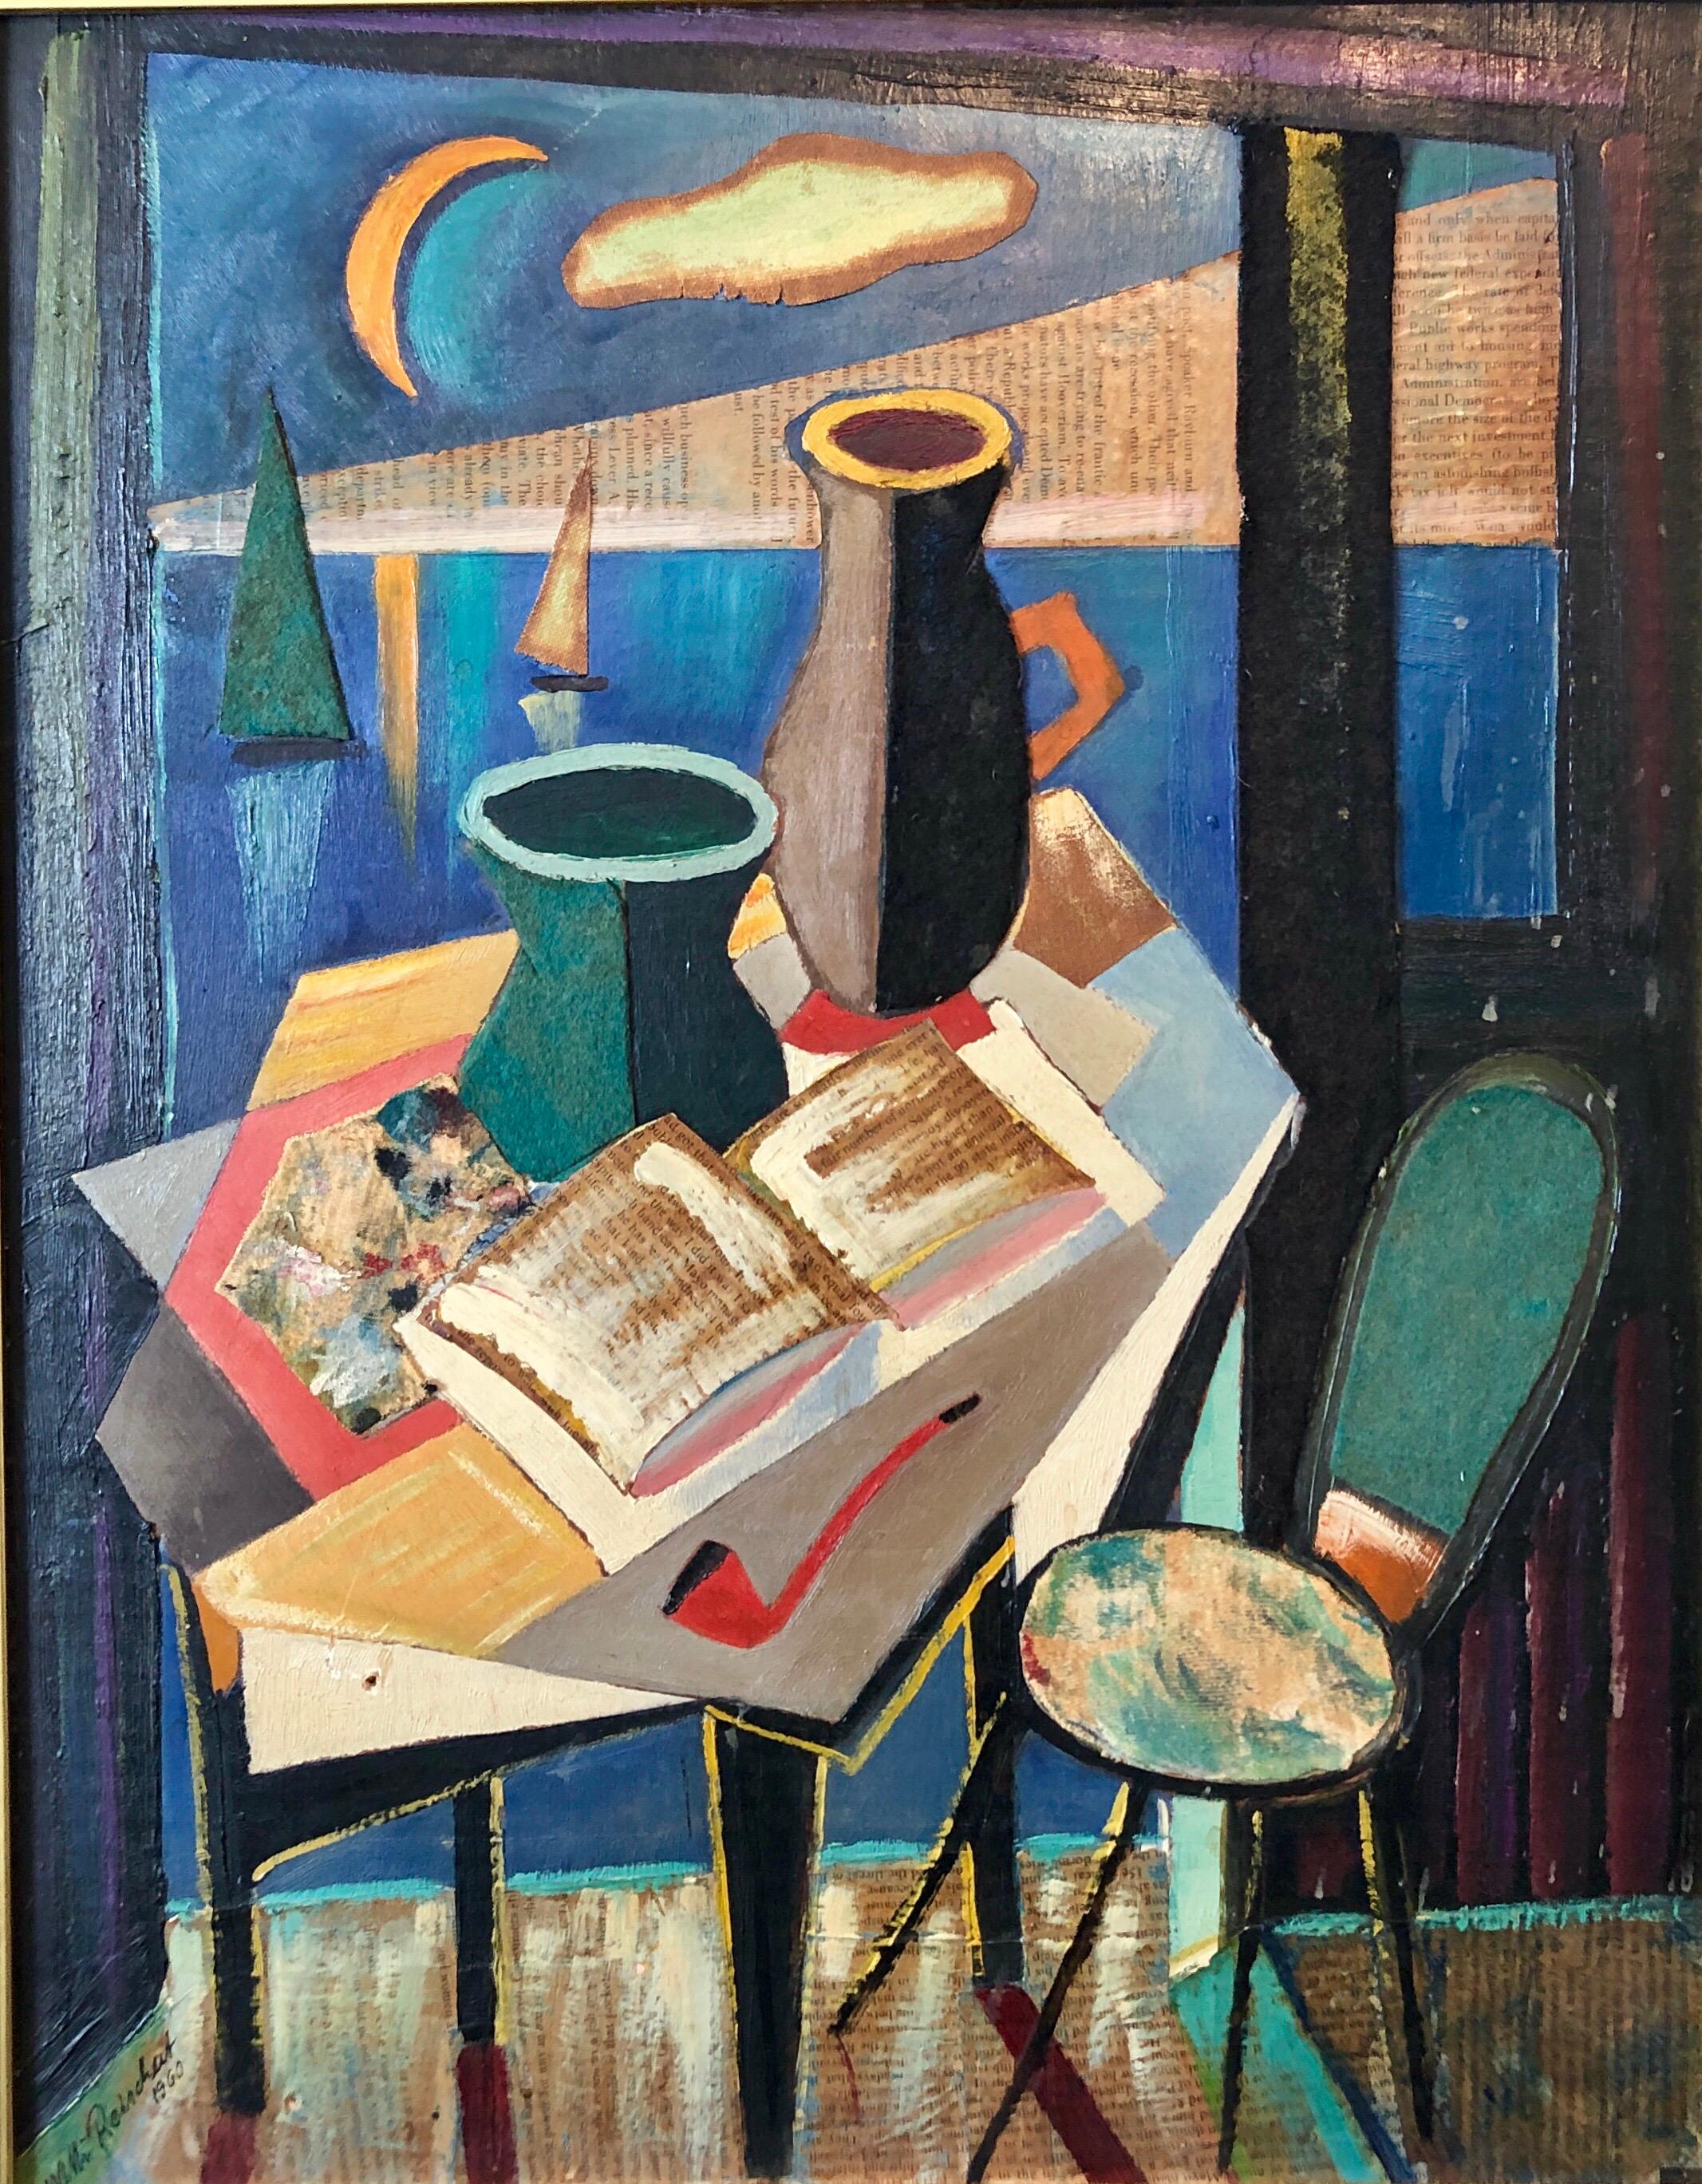 Collage européen Peinture à l'huile cubiste 1960 Intérieur surréaliste avec vase et pipe - Surréalisme Mixed Media Art par Unknown